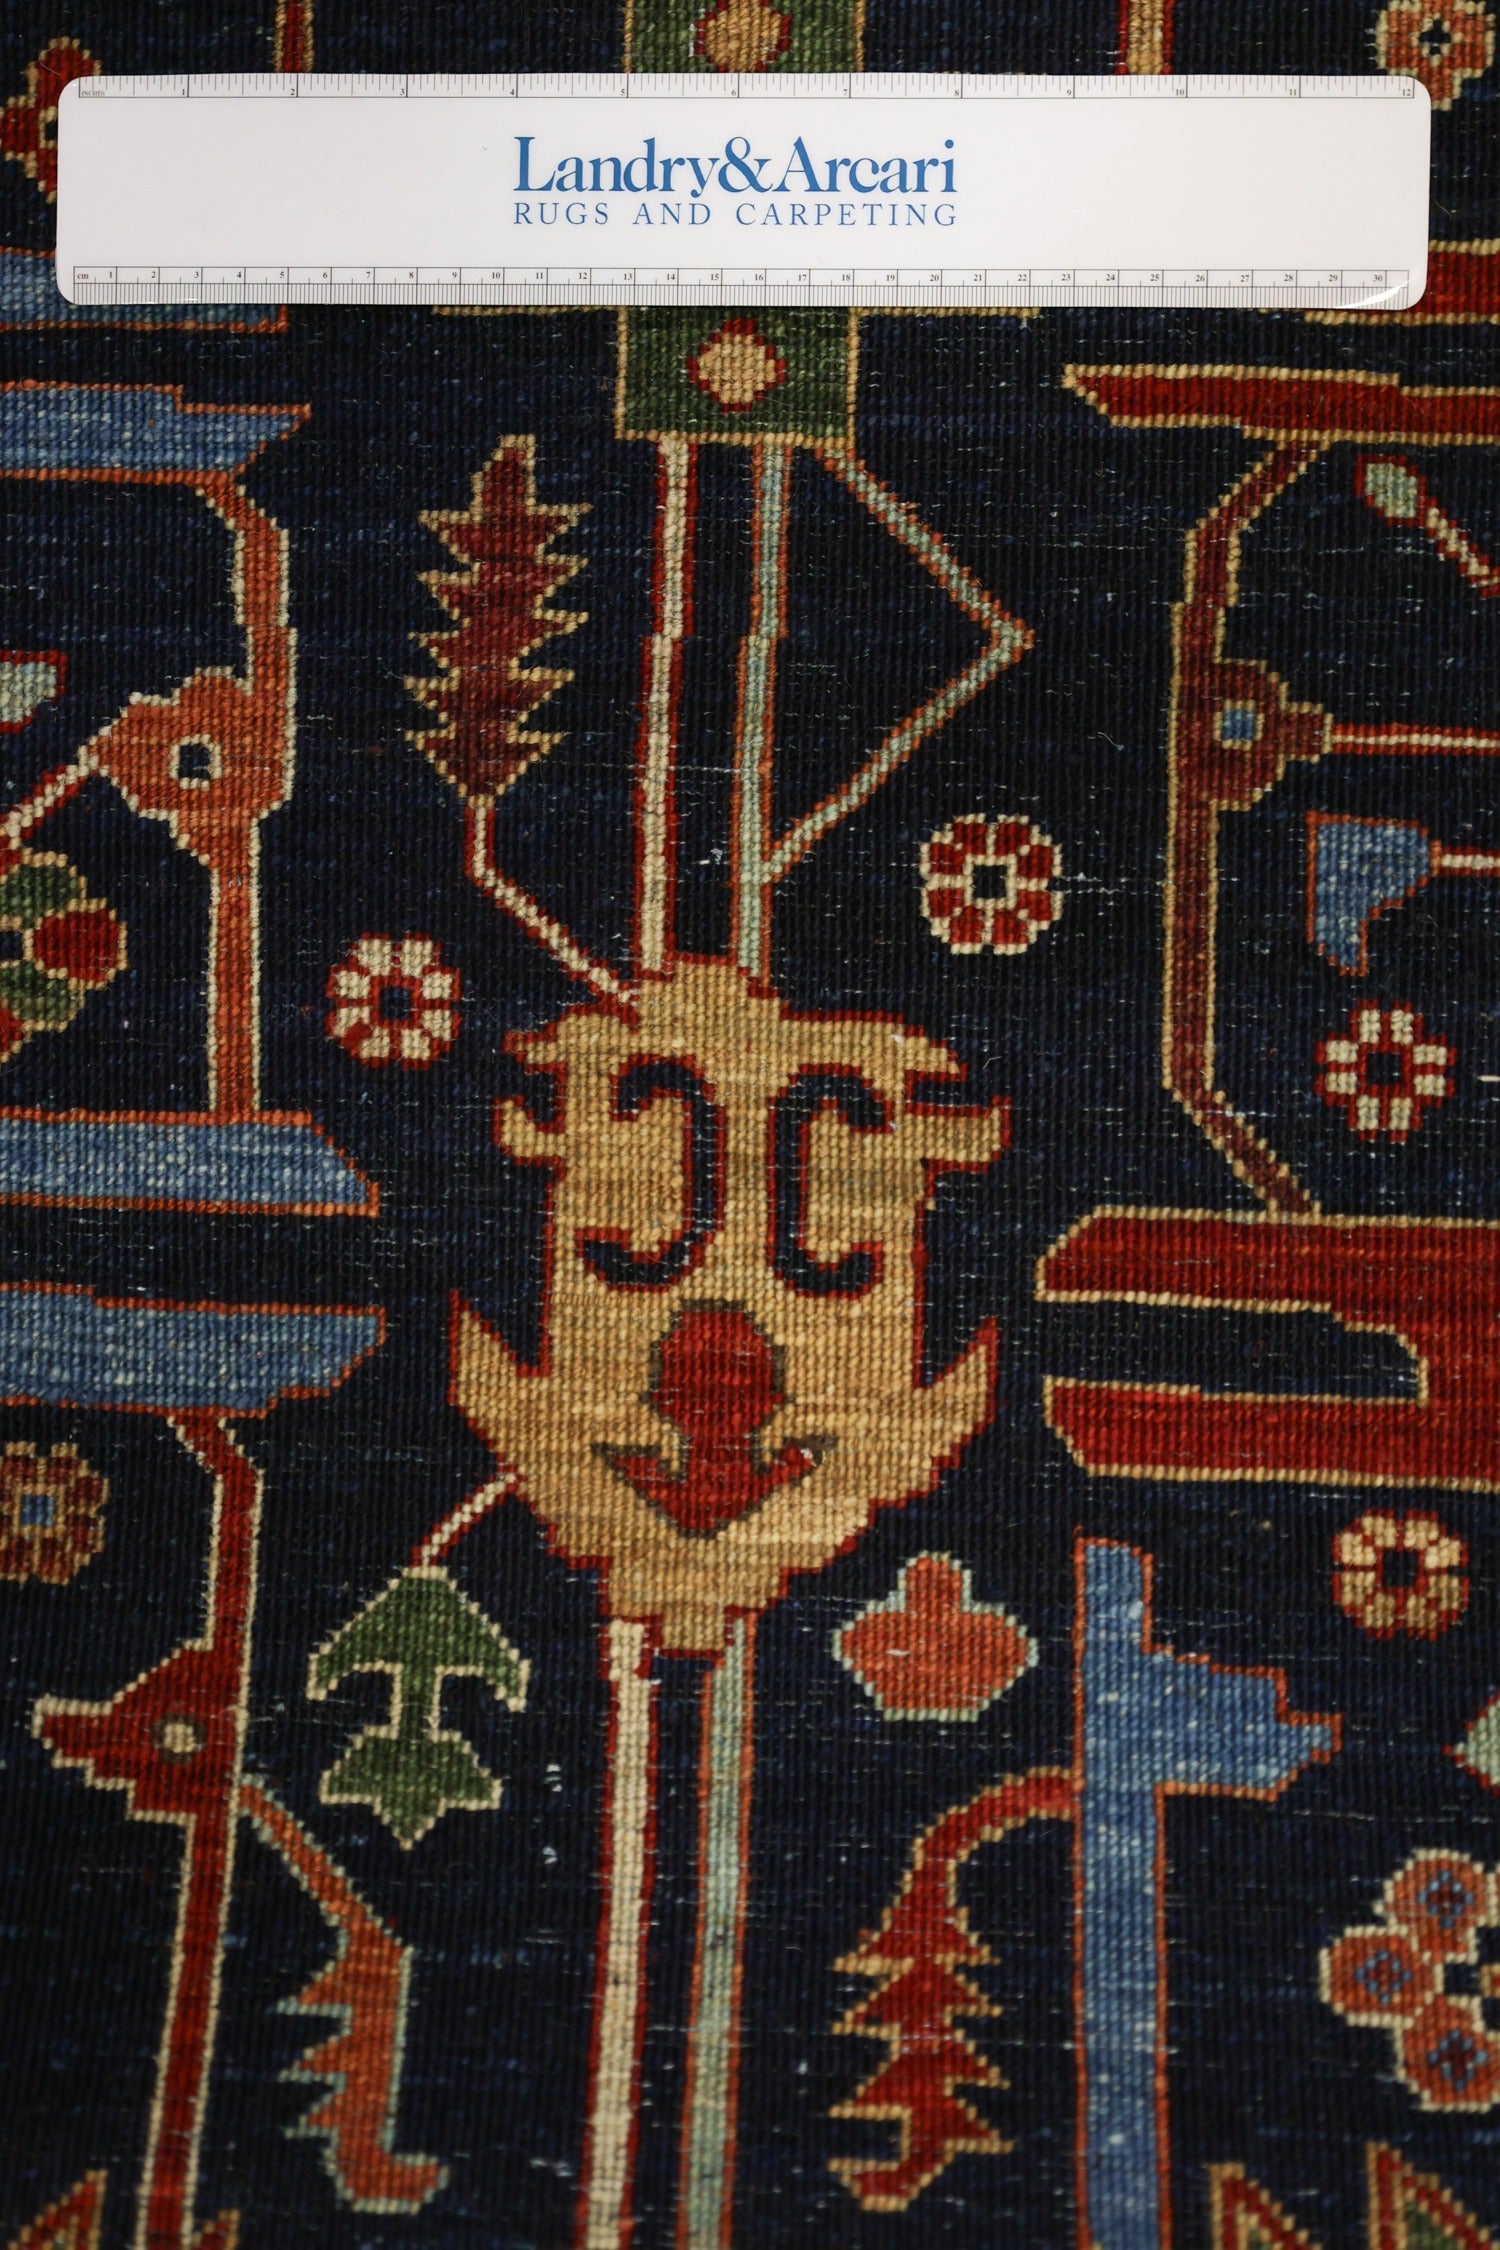 Serapi Handwoven Tribal Rug, J71098